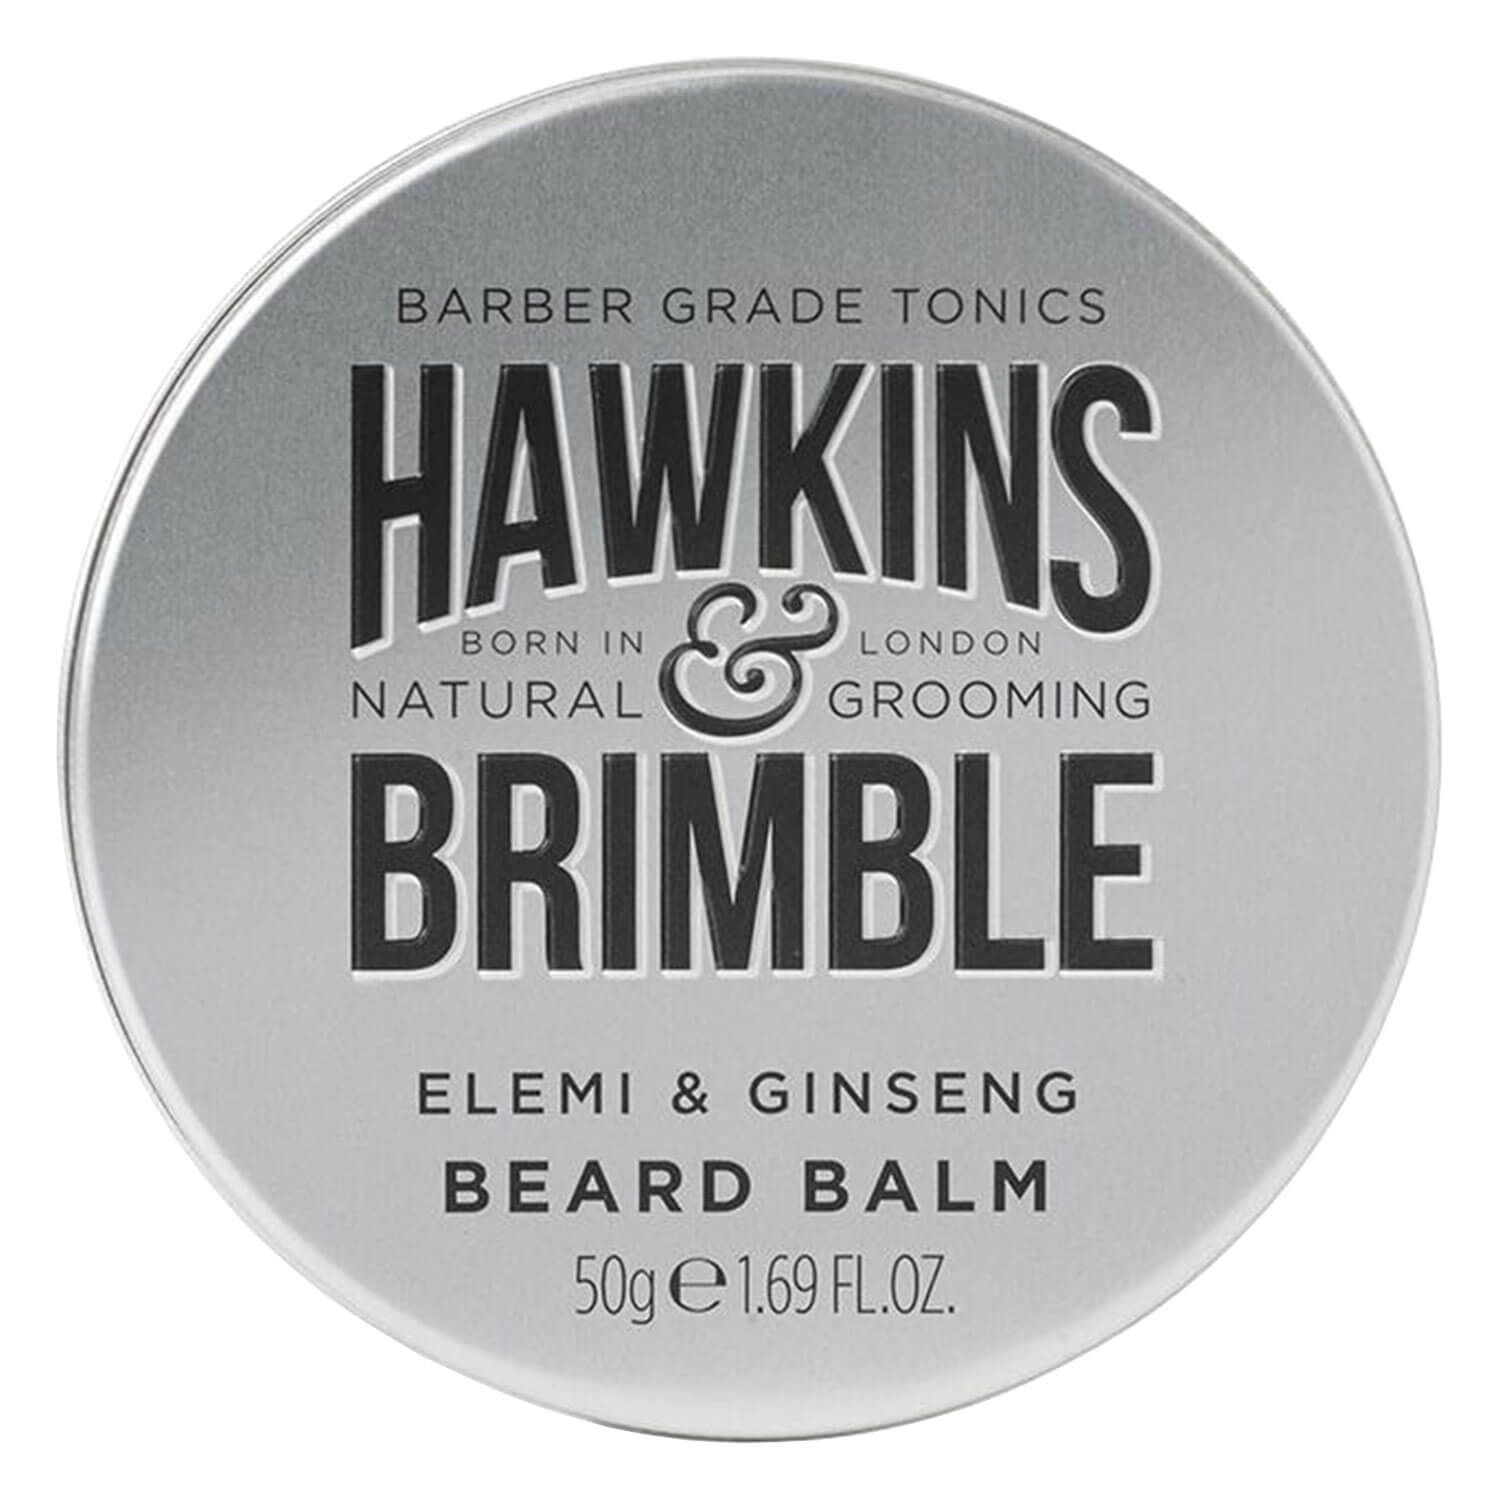 Produktbild von Hawkins & Brimble - Beard Balm